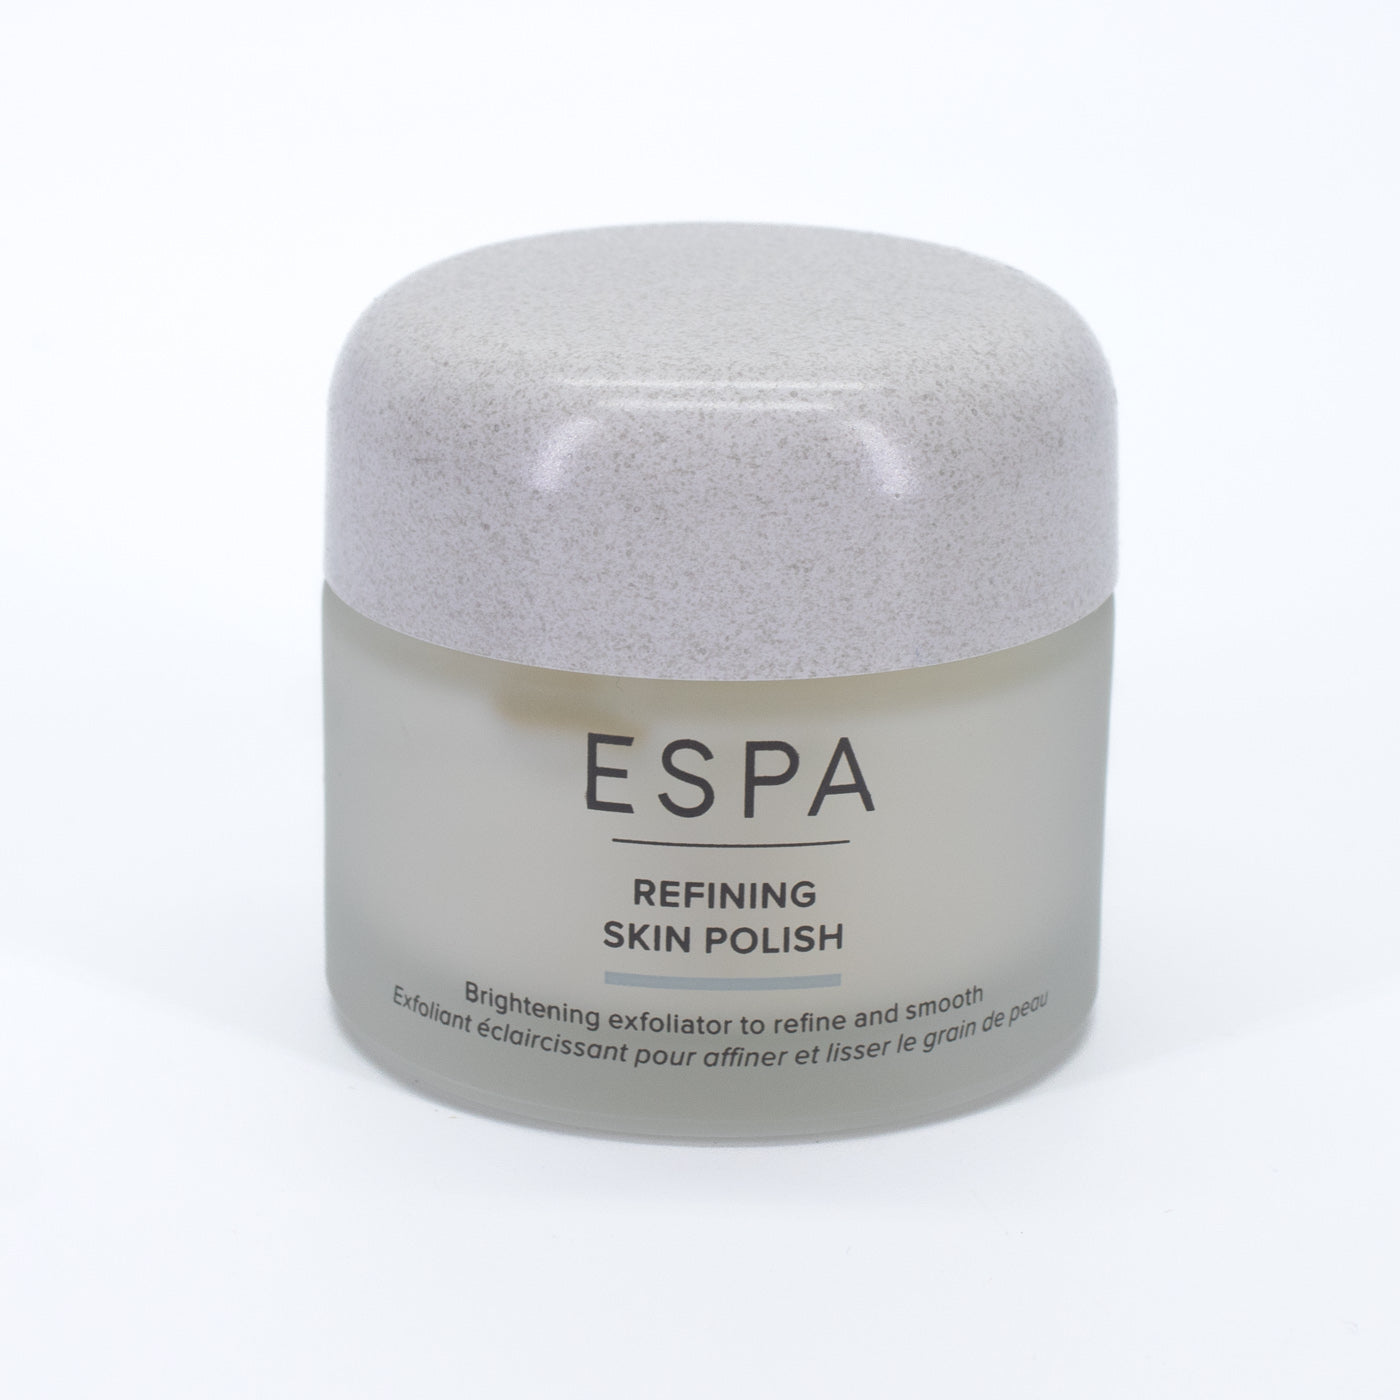 ESPA Refining Skin Polish 1.8oz - New